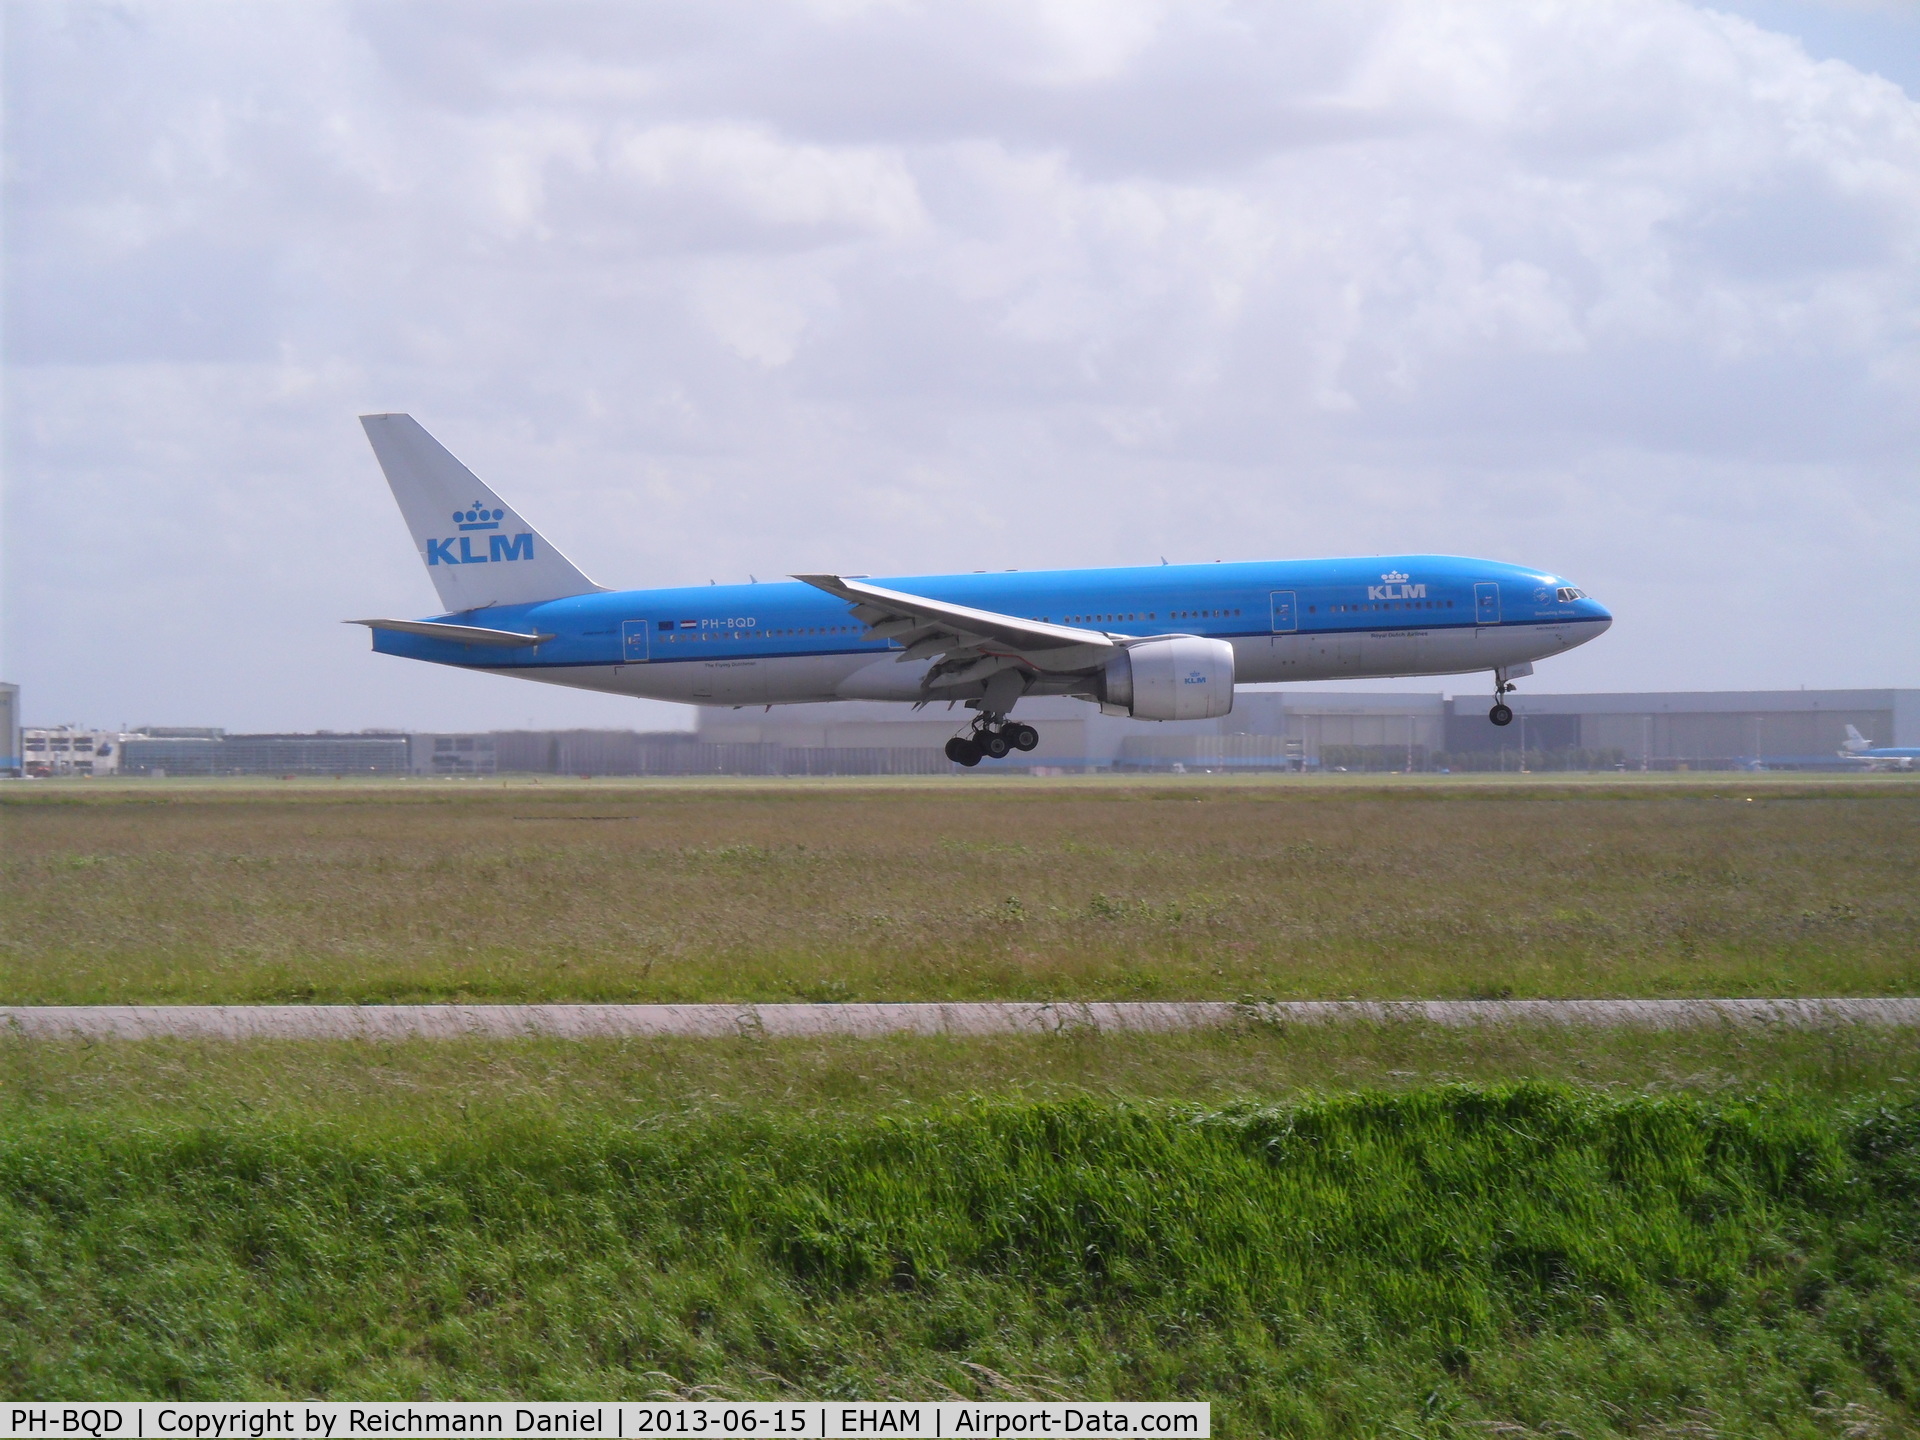 PH-BQD, 2003 Boeing 777-206/ER C/N 33713, KLM 777-200ER